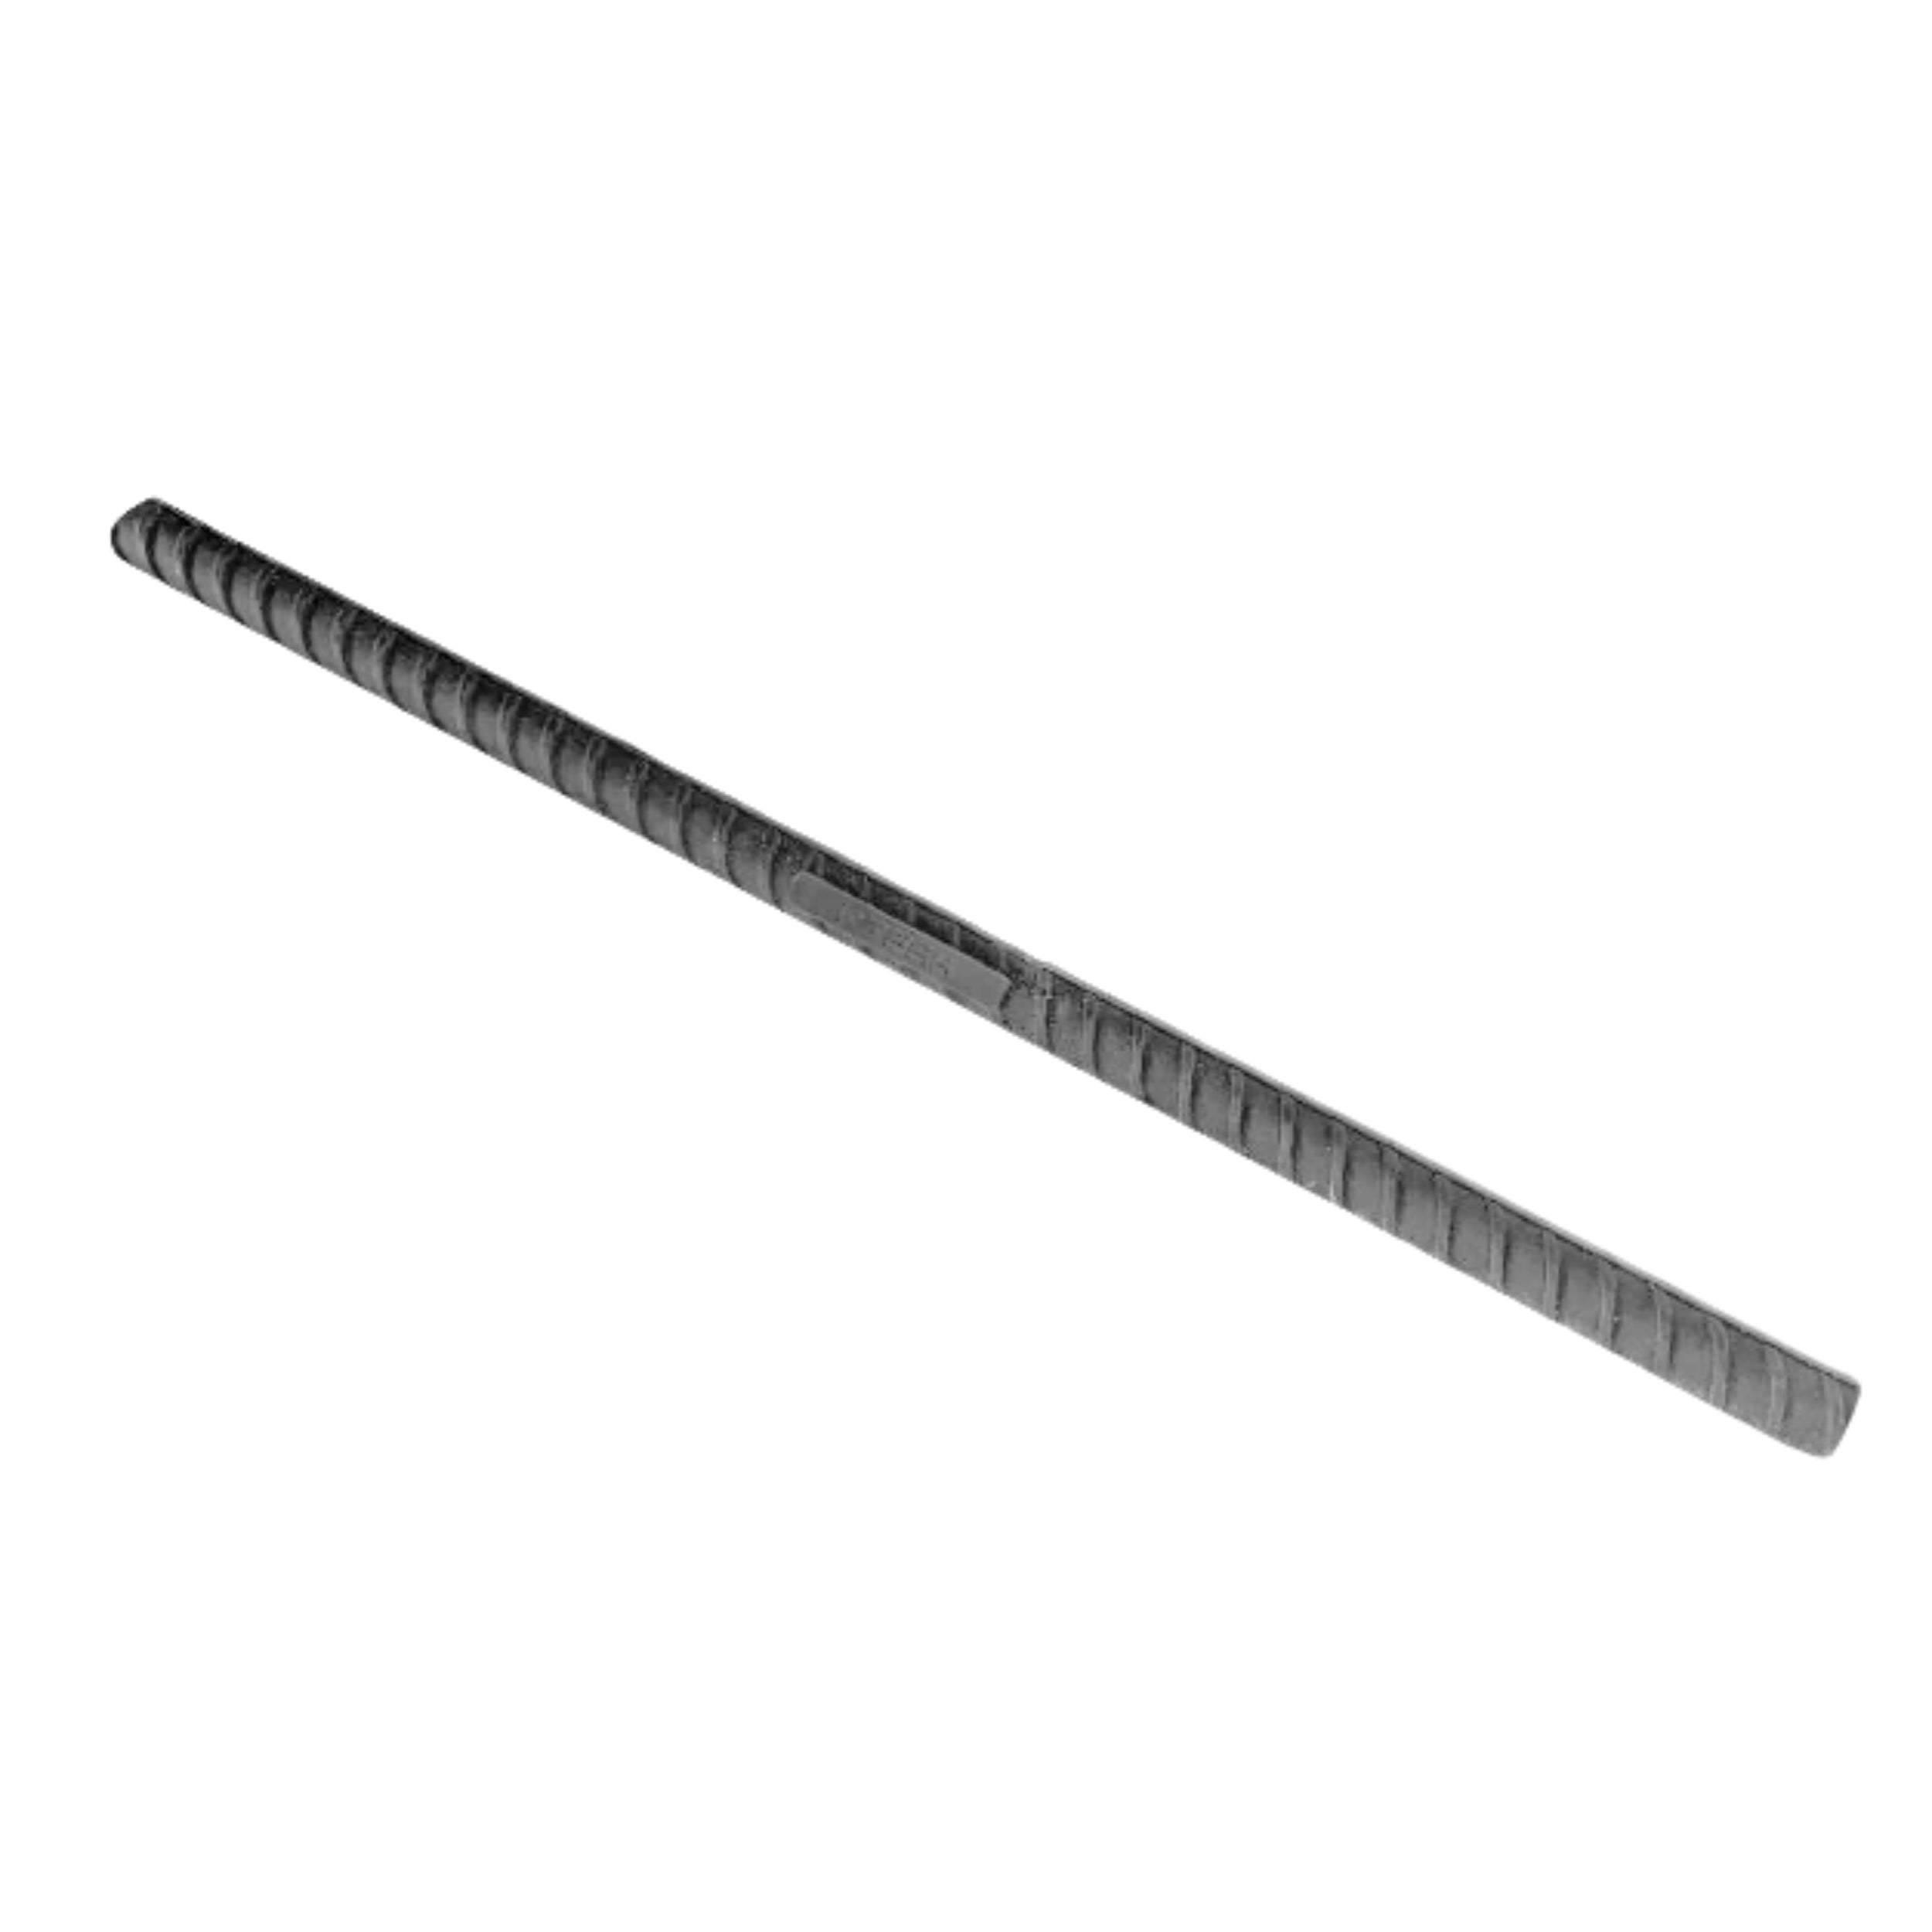 RTFAK rubber threaded rod, 60 cm